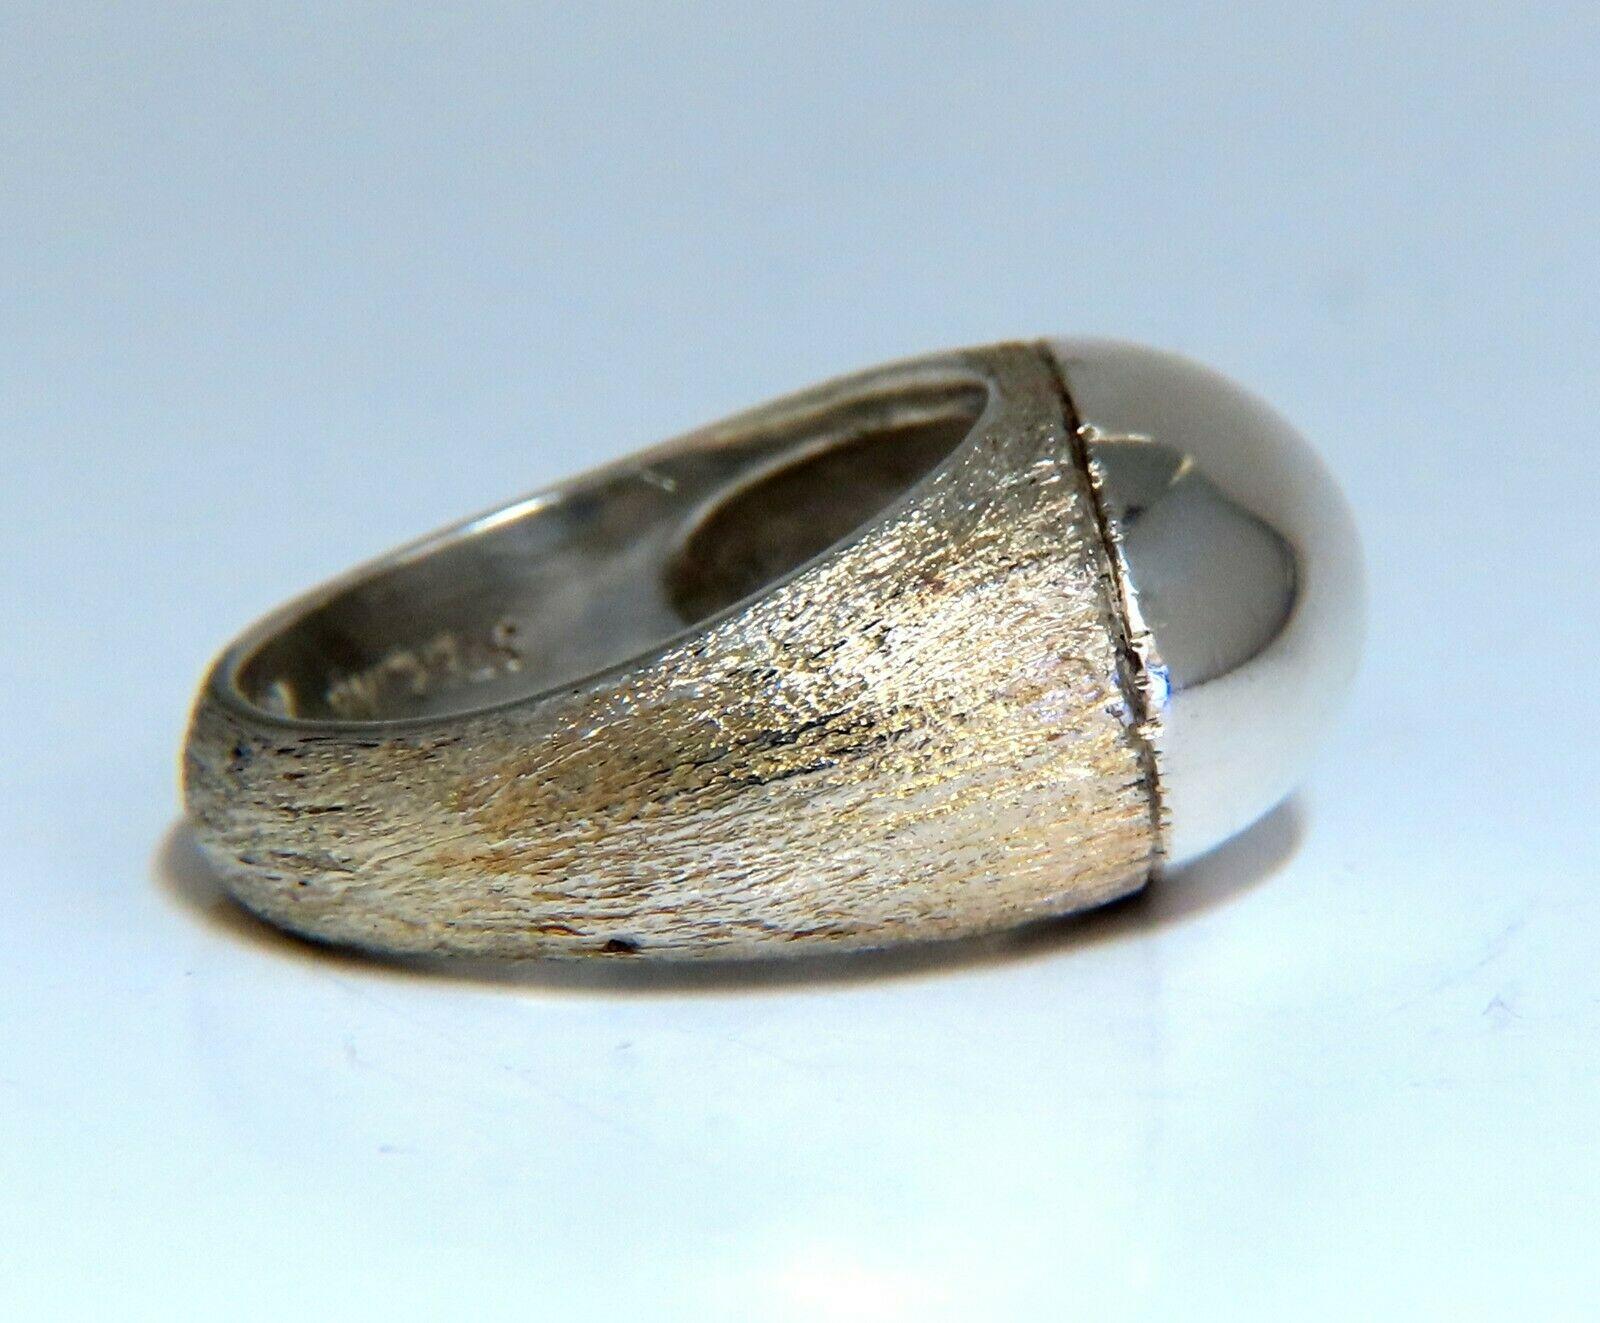 Sterling Silber hochglänzende Kugel Deco Top Ring.

Langlebige, gut gemachte rustikale Deko.

Wunderschöner satinierter Schaft aus Rinde

Gesamtgewicht 8,3 g

Tiefe des Rings 7,3 mm

Der Ring ist 11,2 mm breit

Größe 6 und 1/2 und wir können die